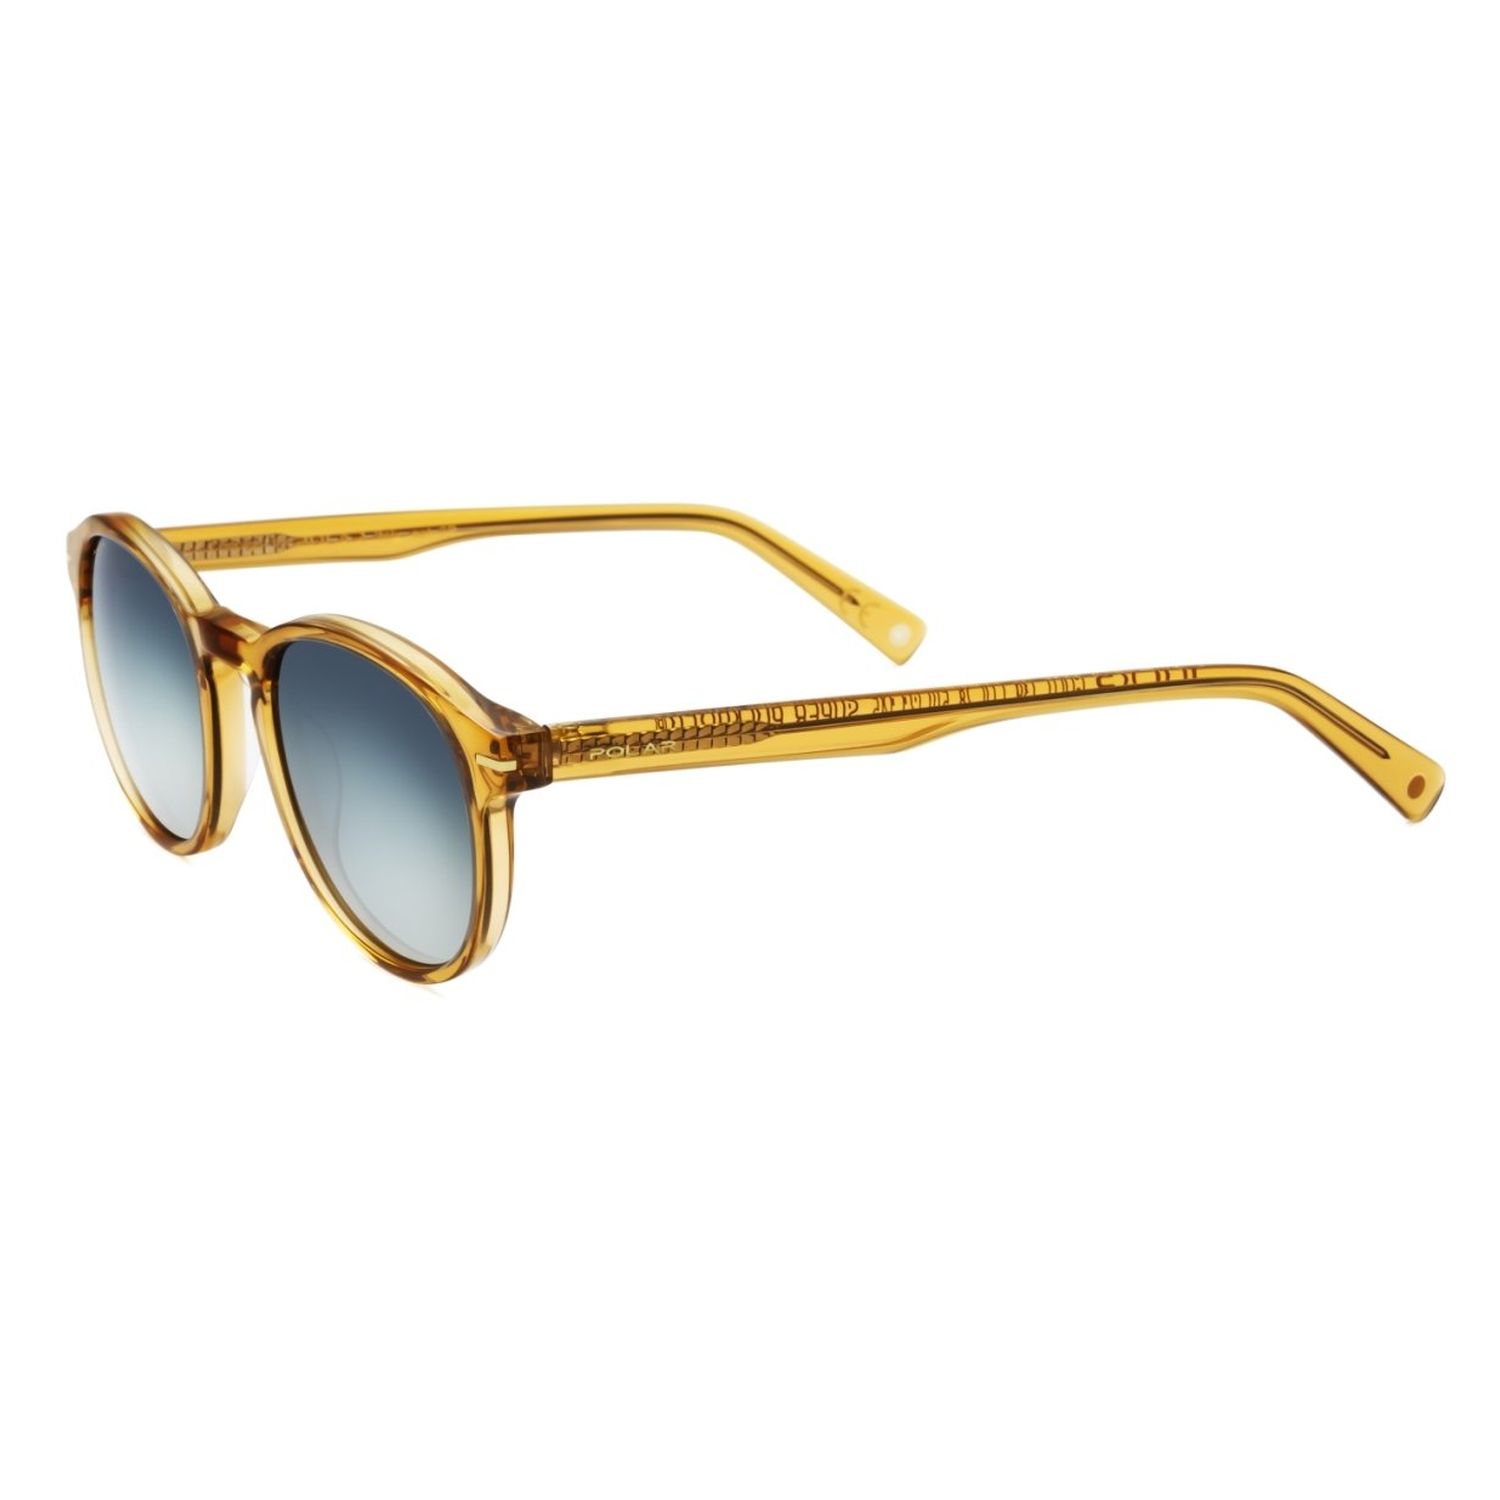 Gafas de Sol Sunglasses 139 Miel Calibre 50 Óptica Doñana Visión